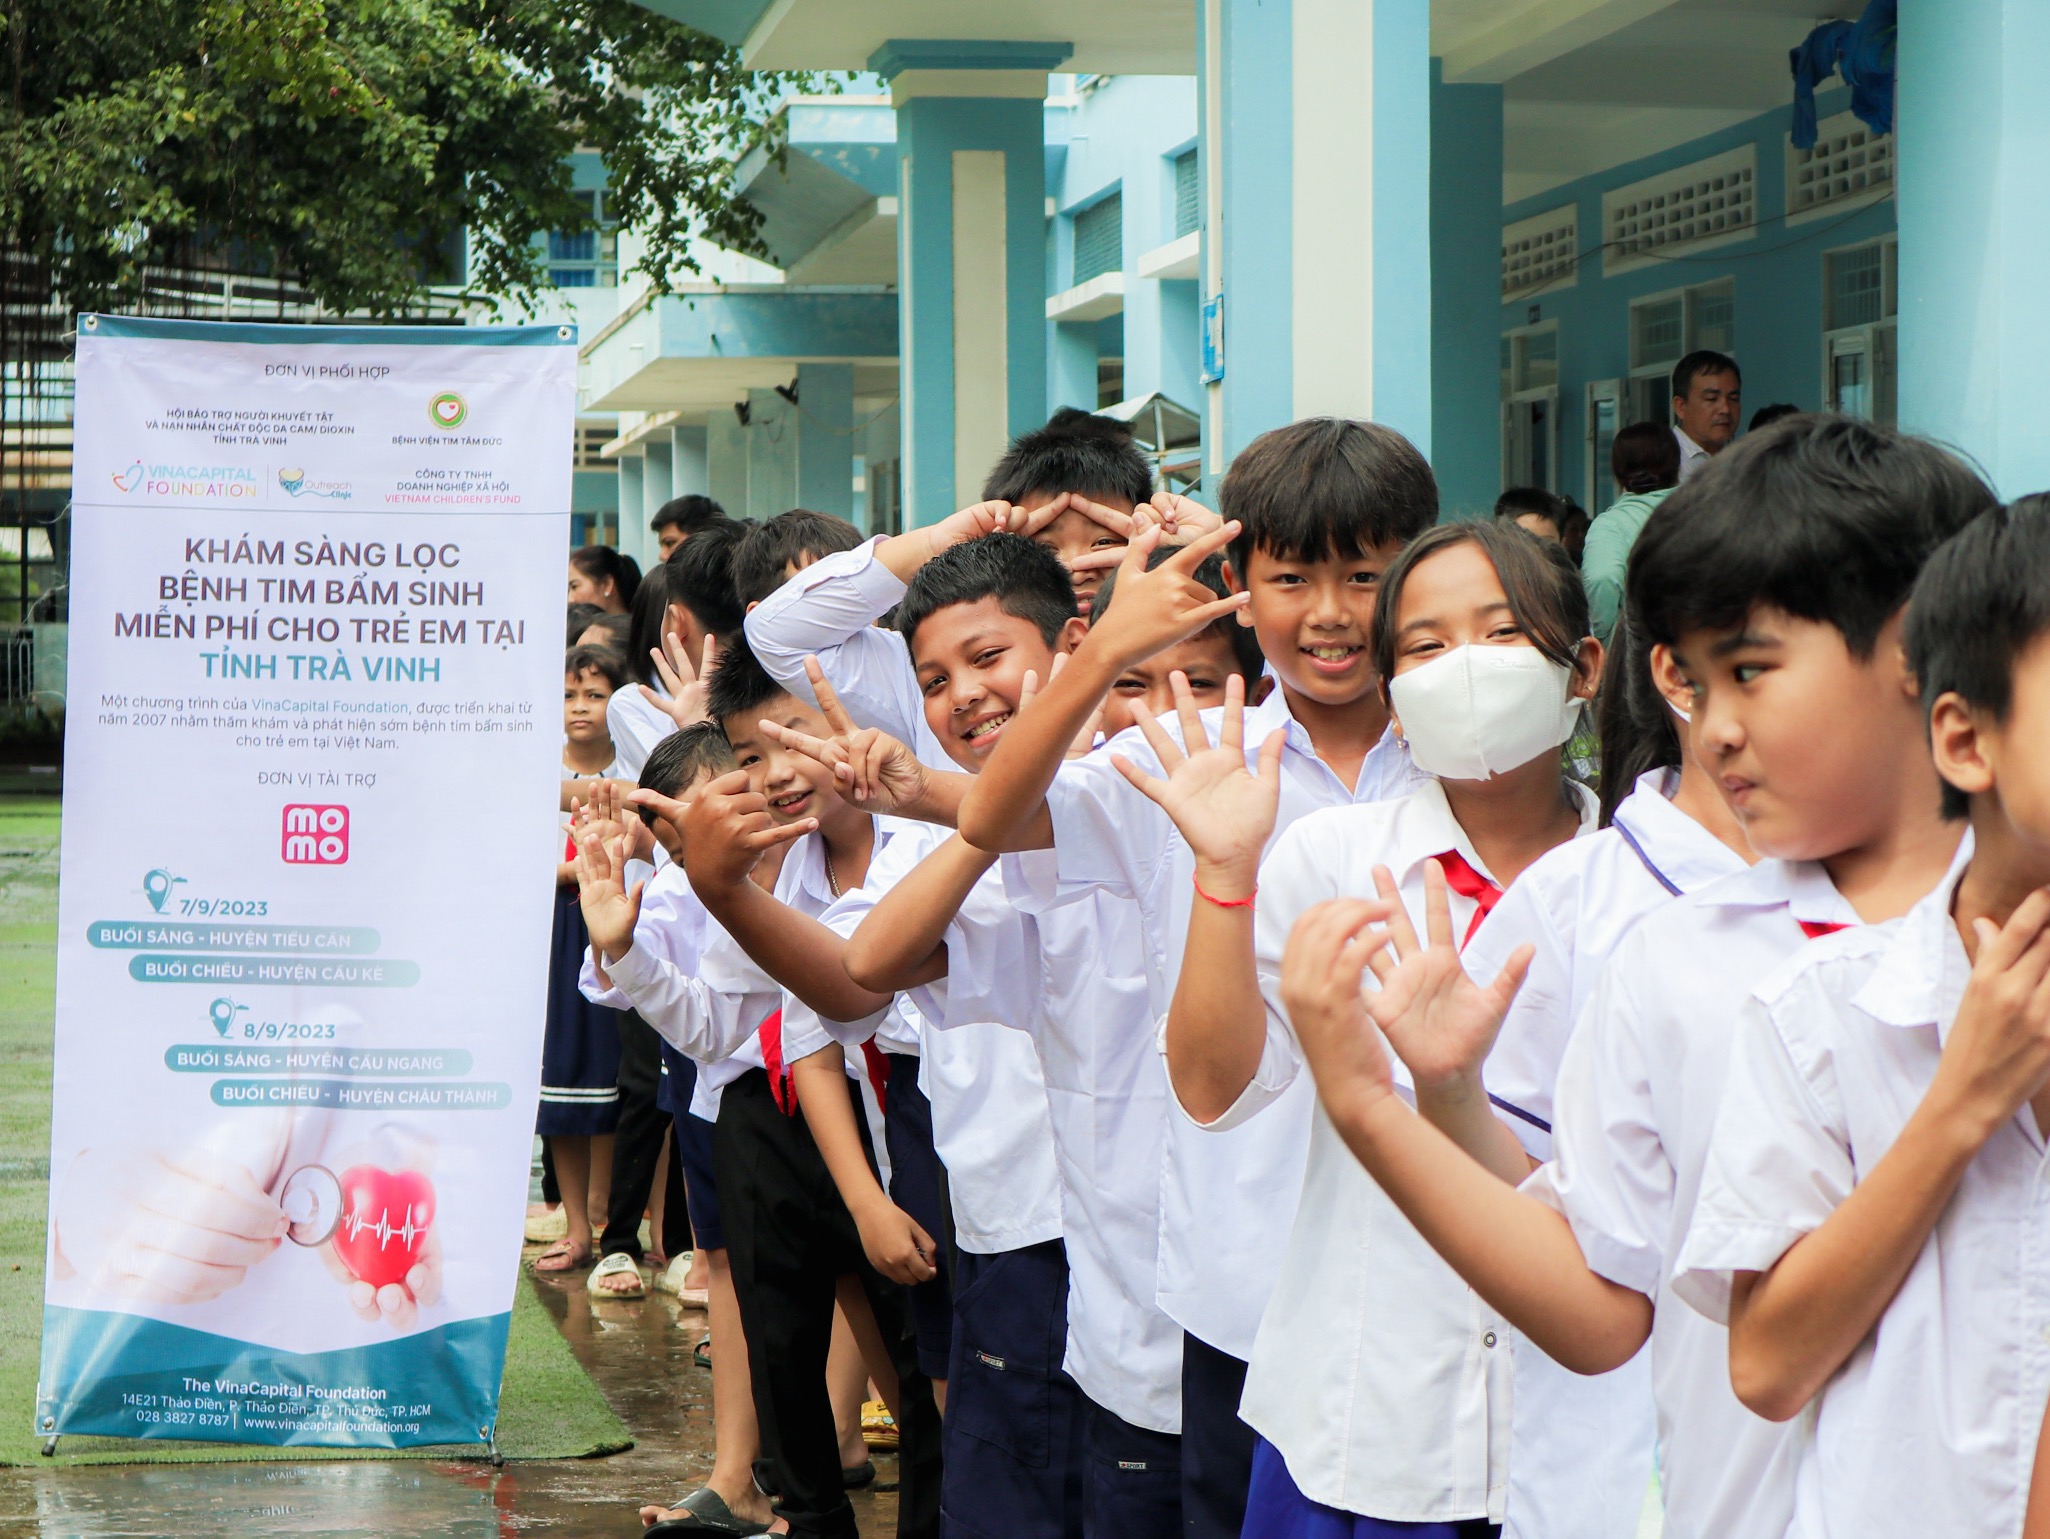  FedEx hợp tác mang dịch vụ chăm sóc sức khỏe tim mạch miễn phí đến cho trẻ em nông thôn Việt Nam